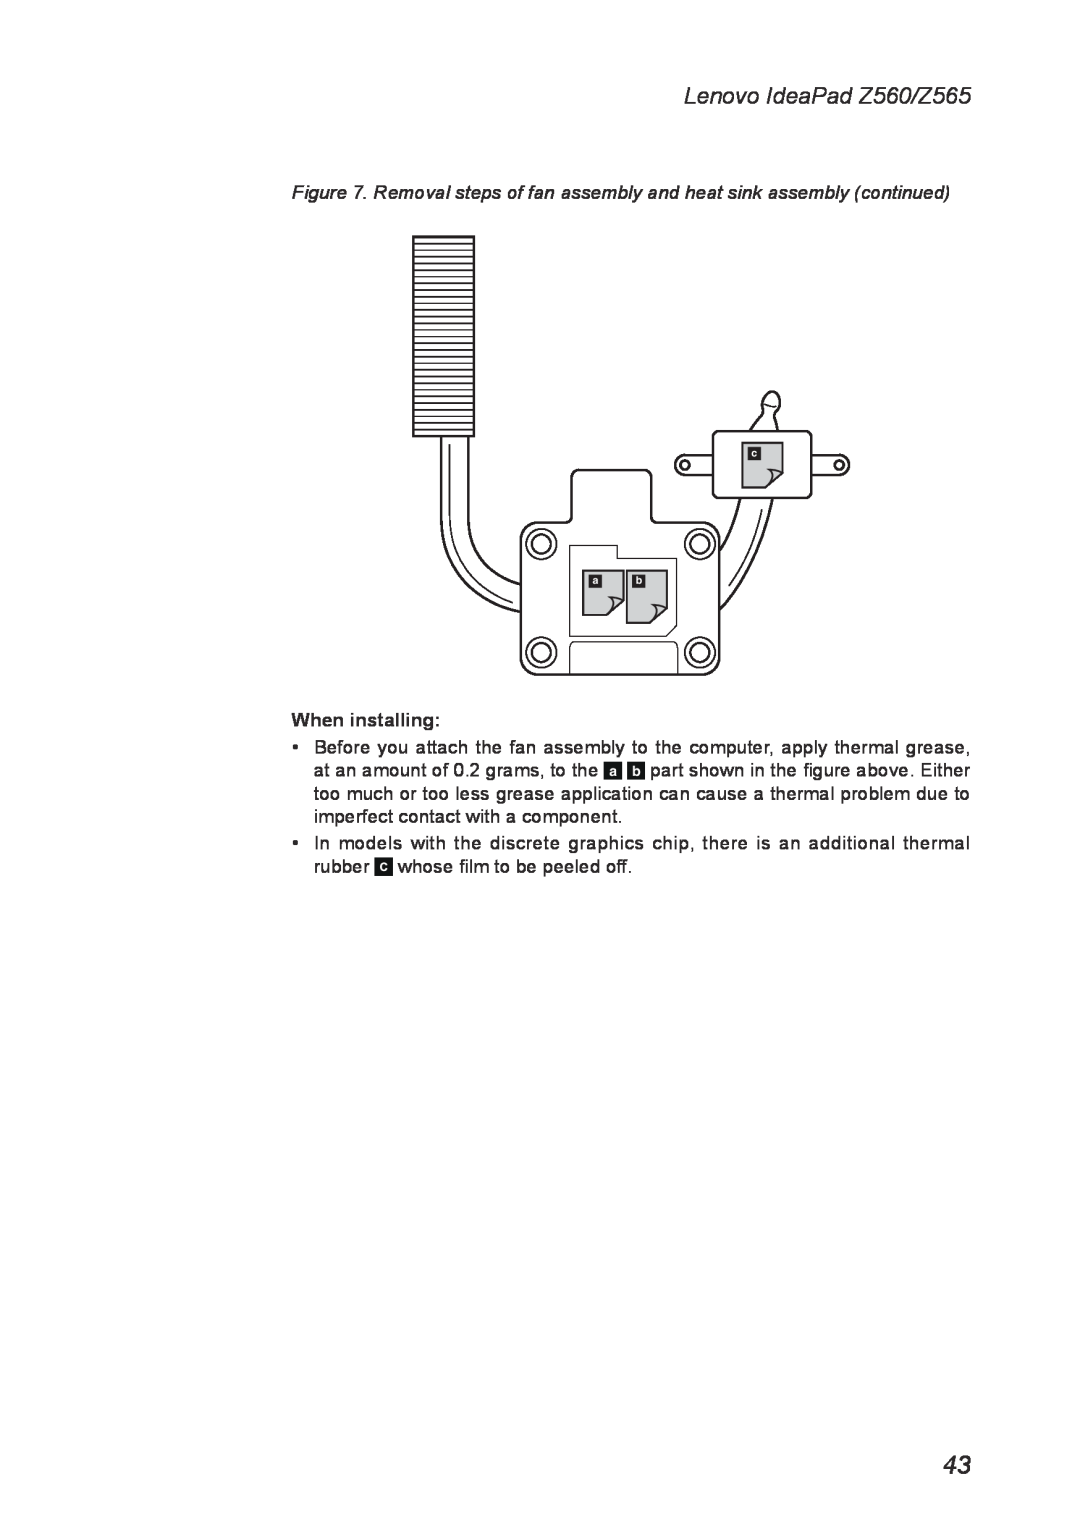 Lenovo manual When installing, Lenovo IdeaPad Z560/Z565 